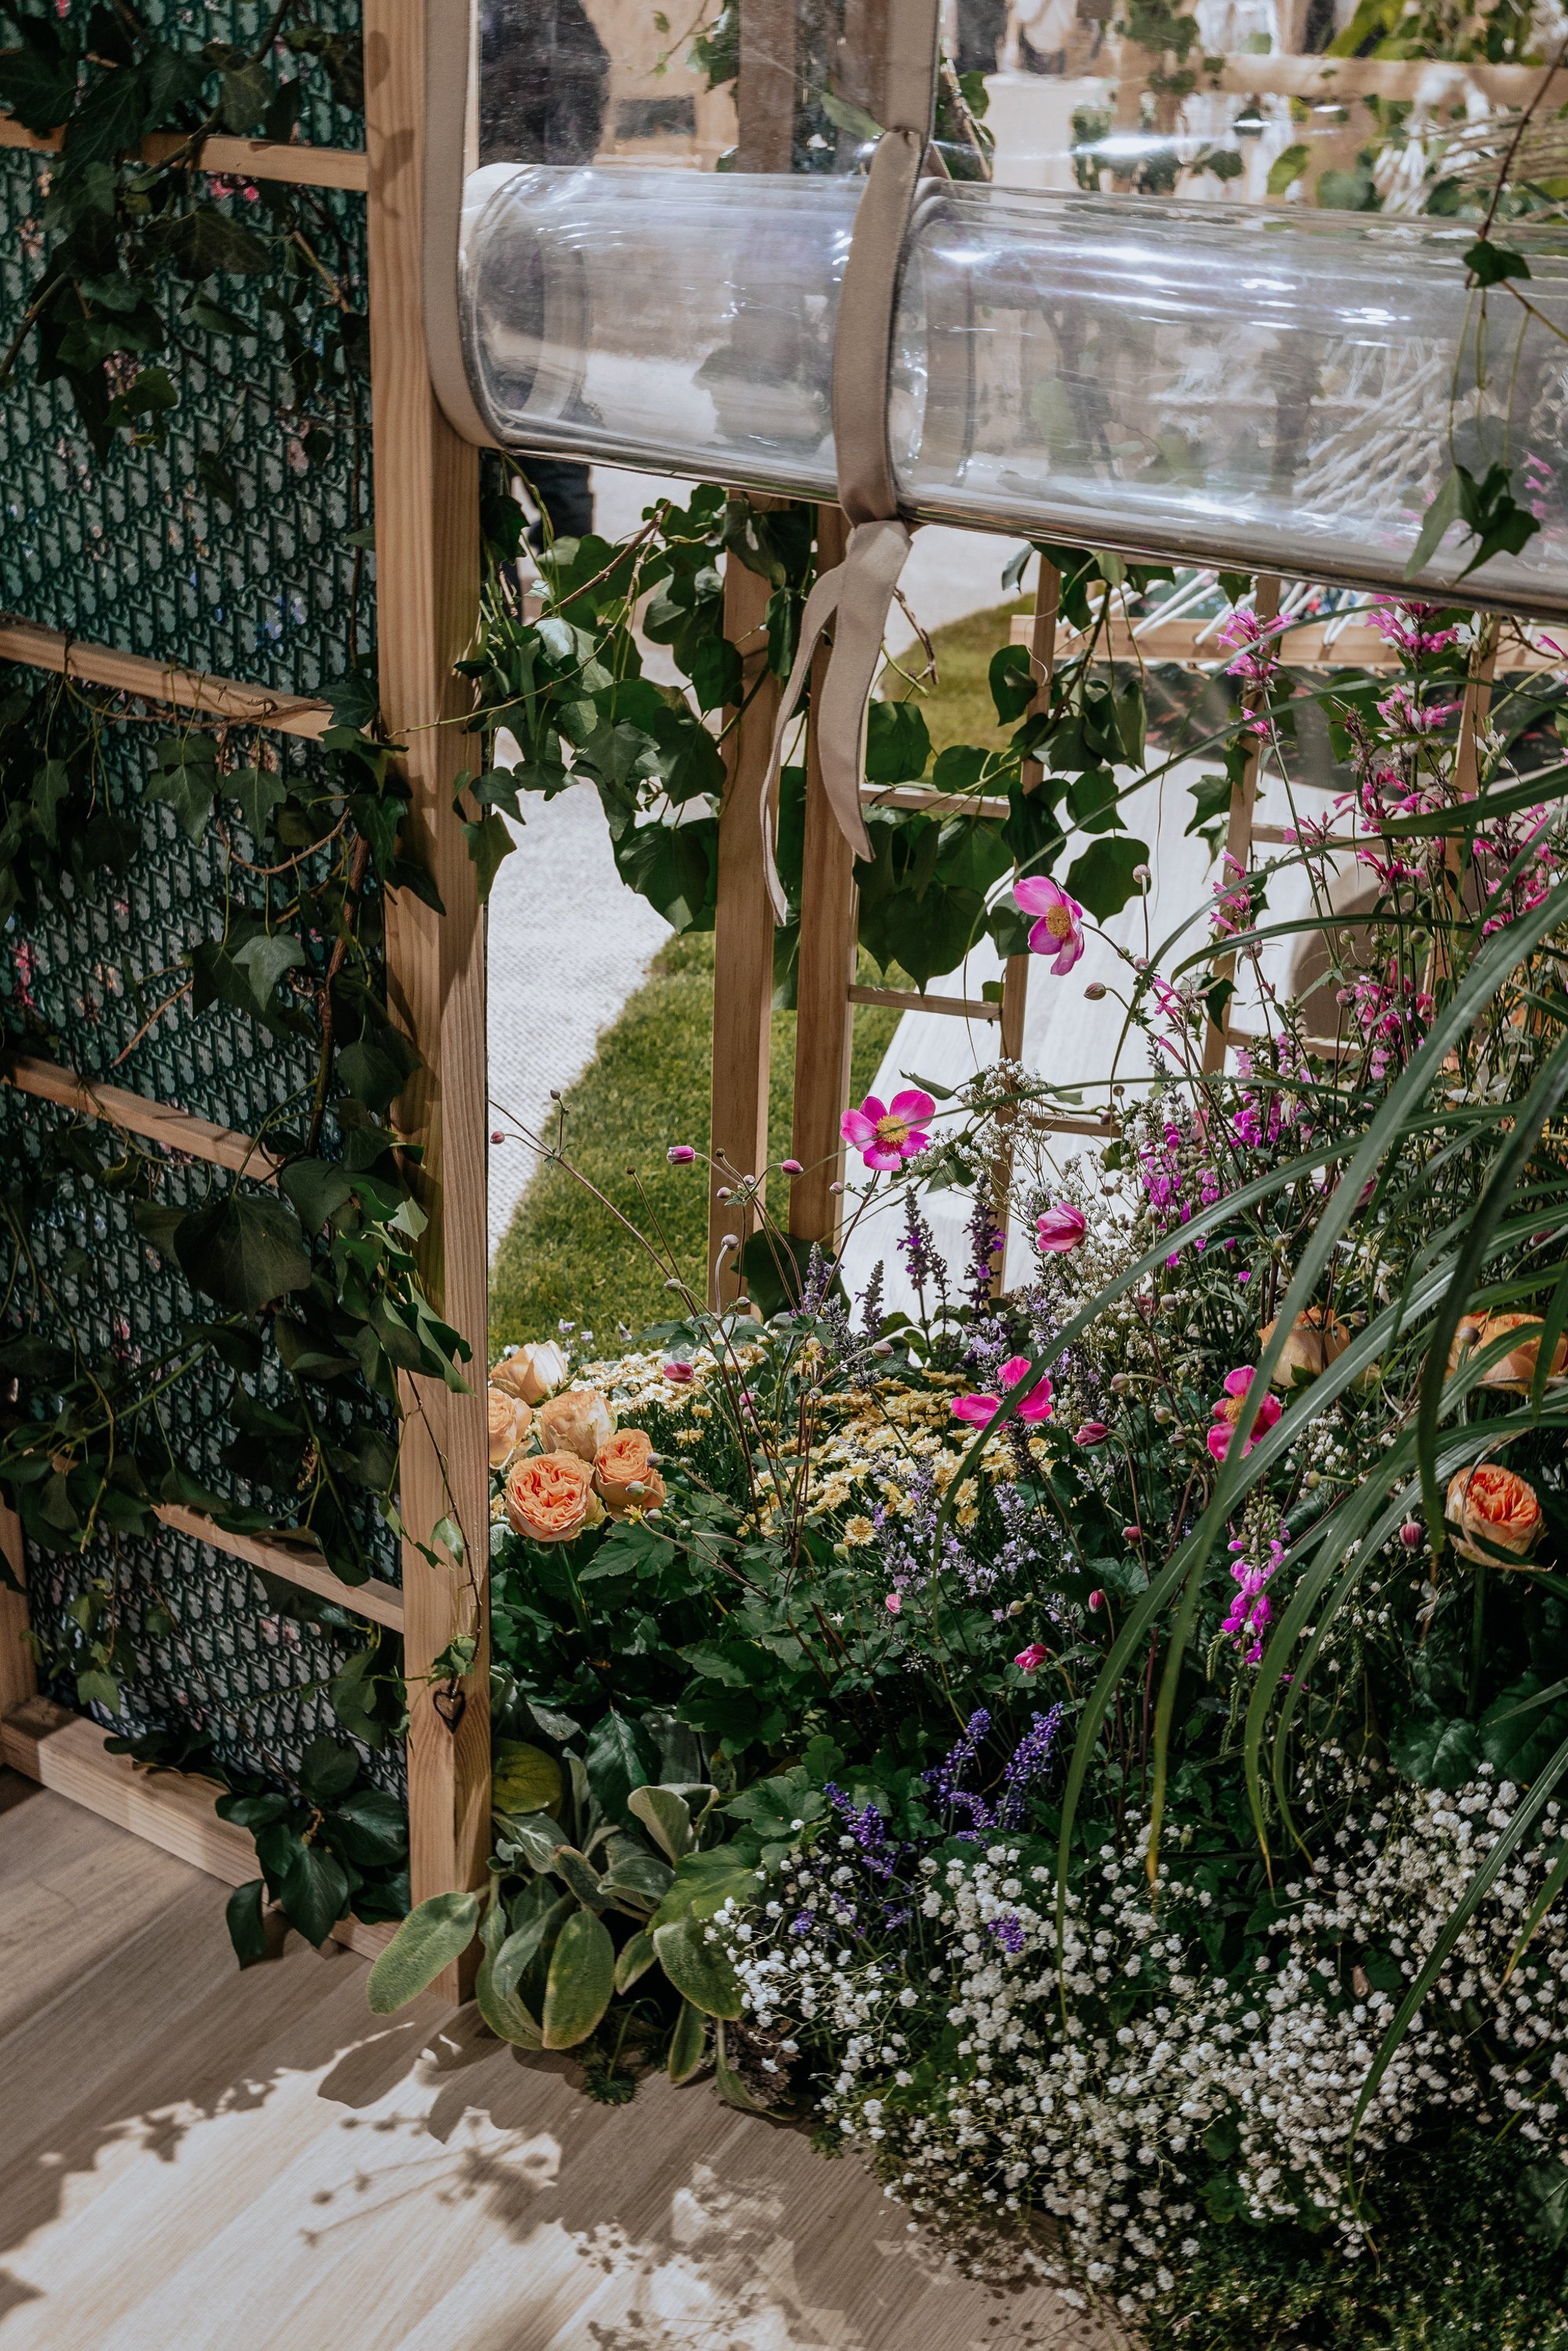 Bespoke garden design is growing inside of window